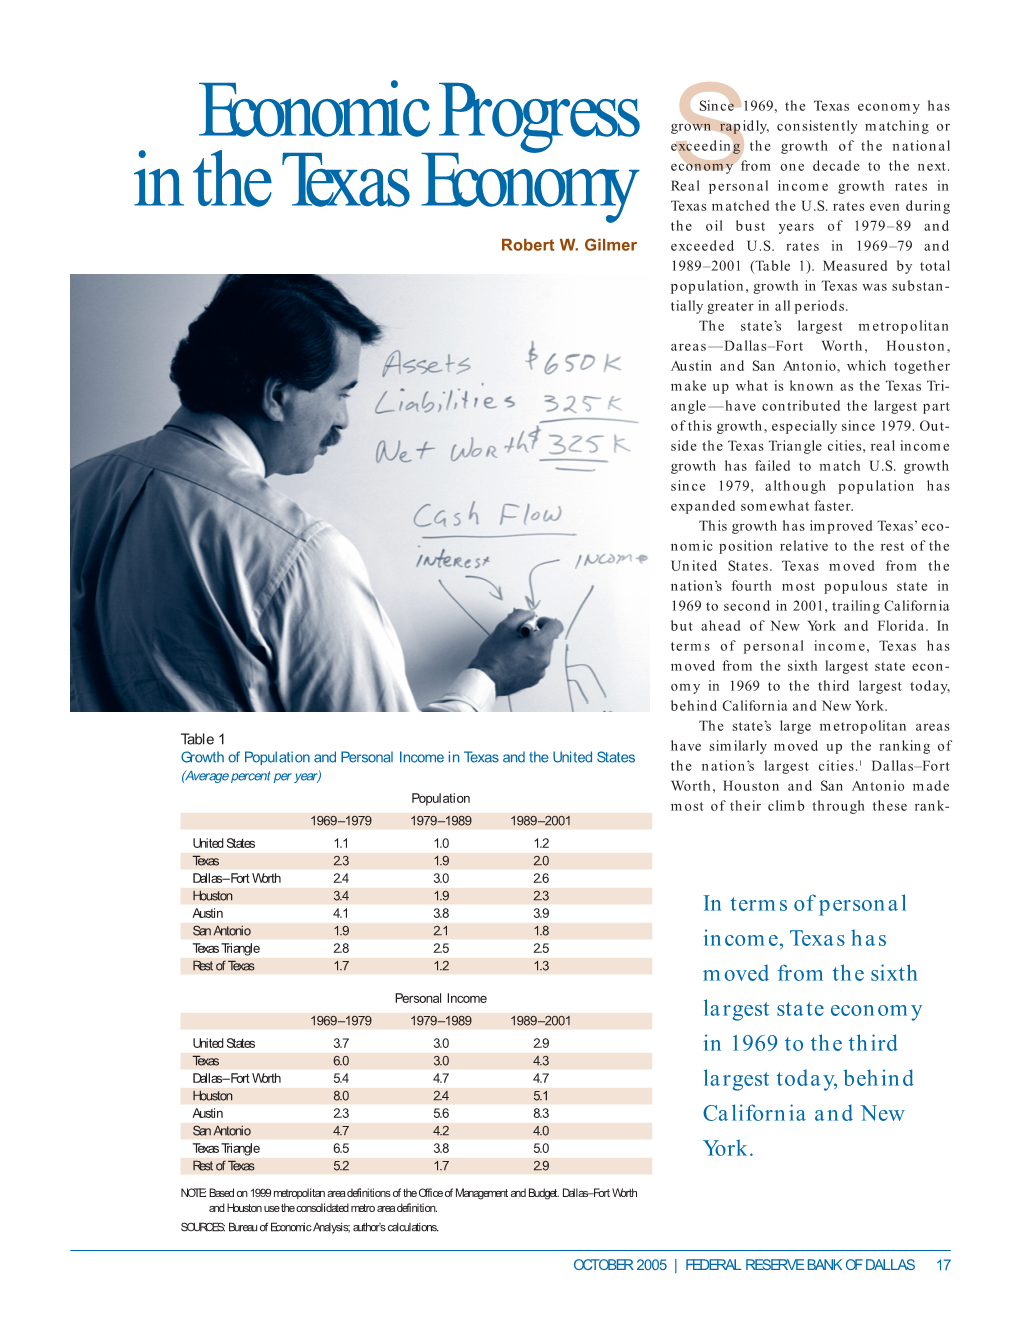 Economic Progress in the Texas Economy